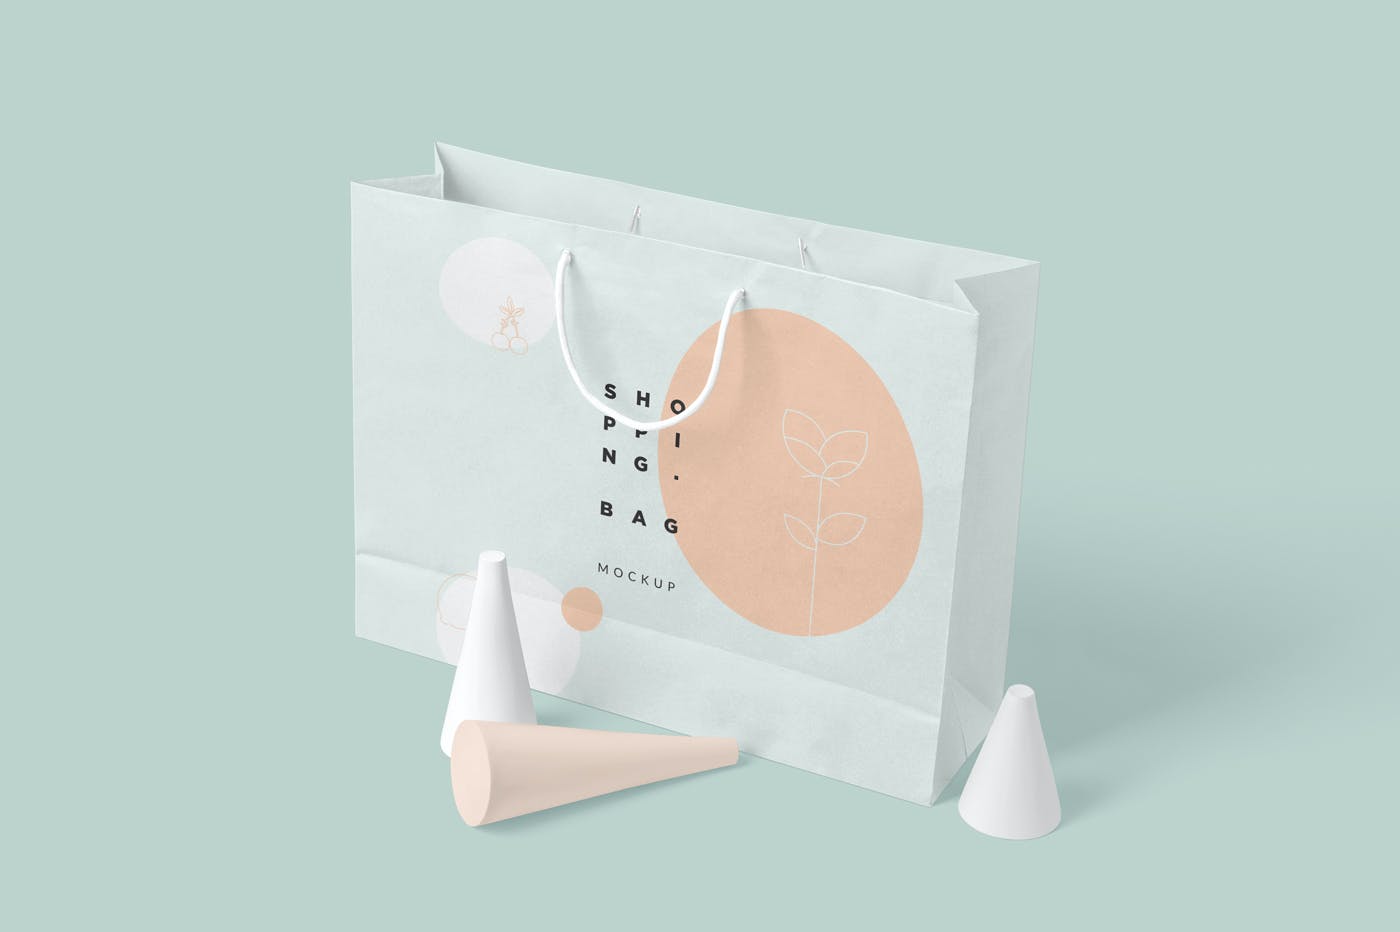 购物袋品牌包装设计样机模板 4 Paper Shopping Bag Mockups设计素材模板